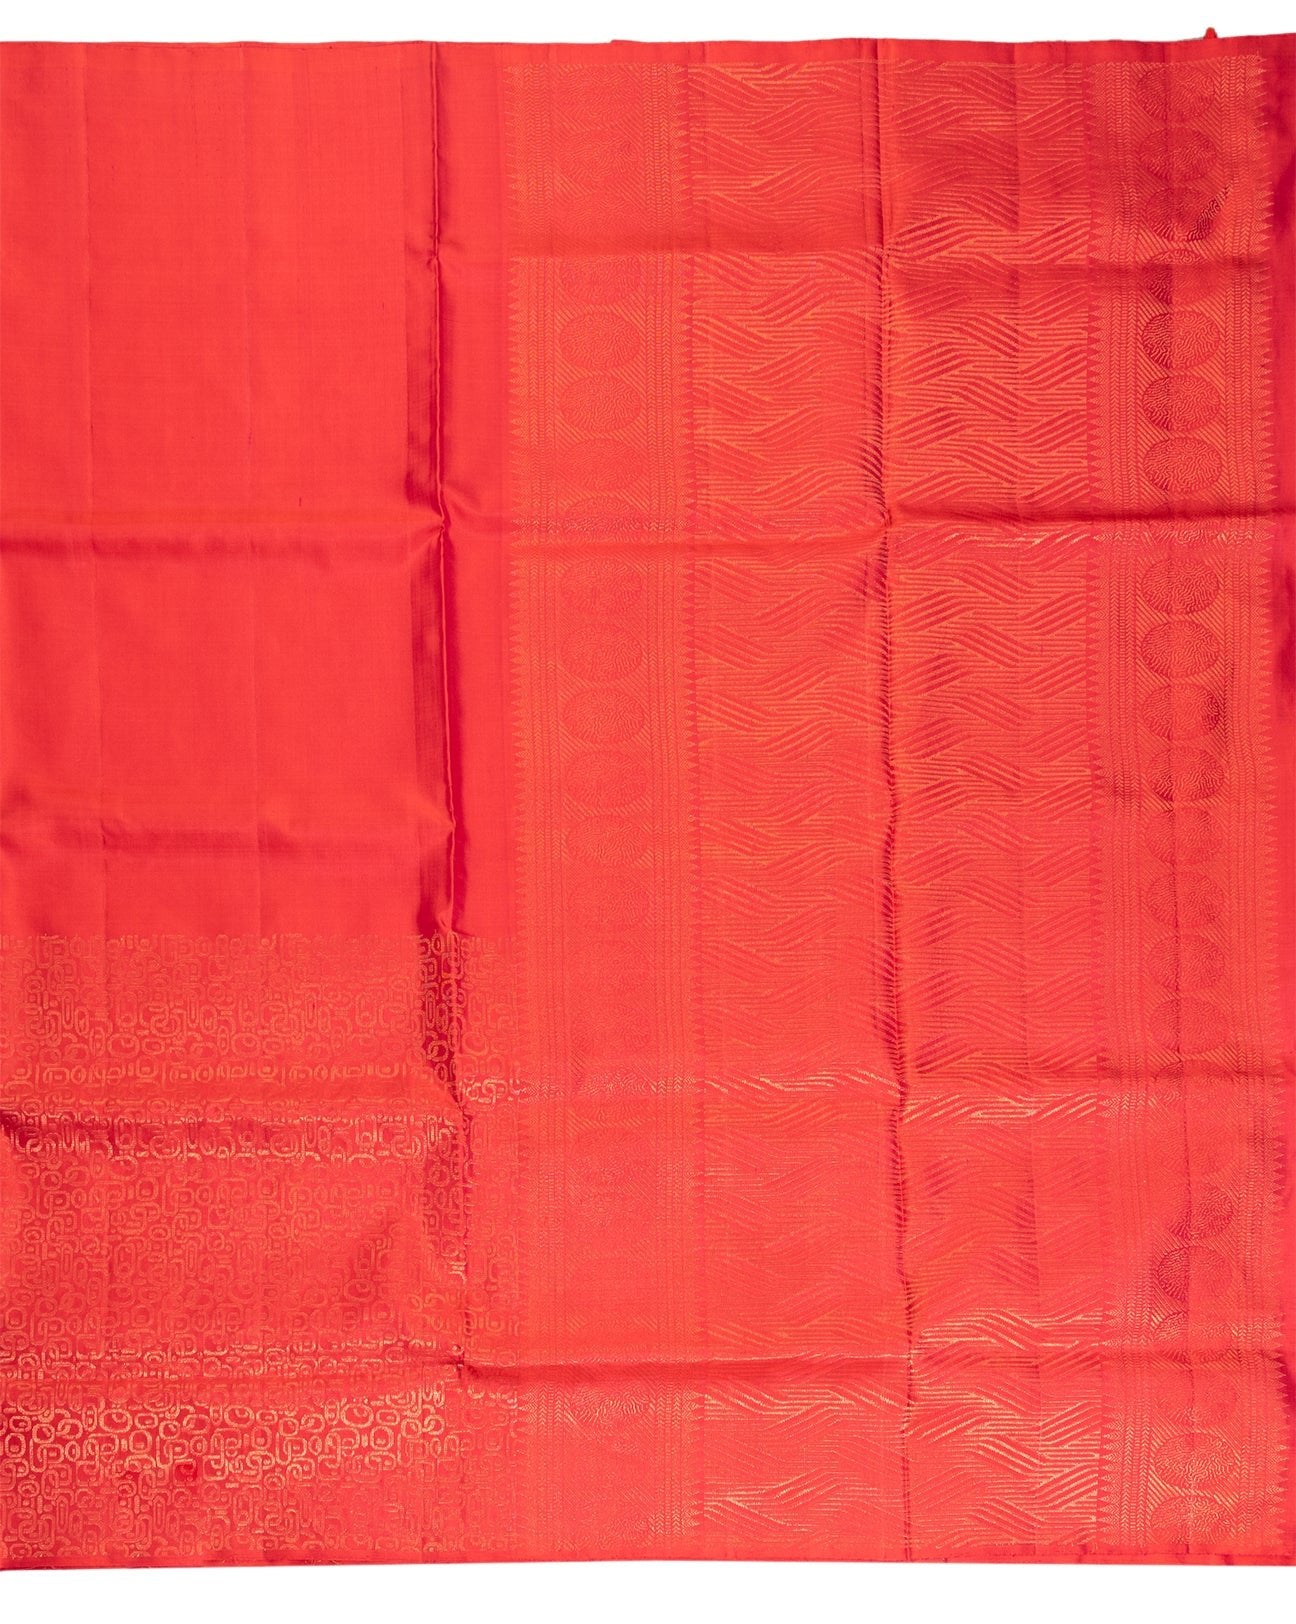 Golden Pink Tussar Silk Saree - swayamvara silks